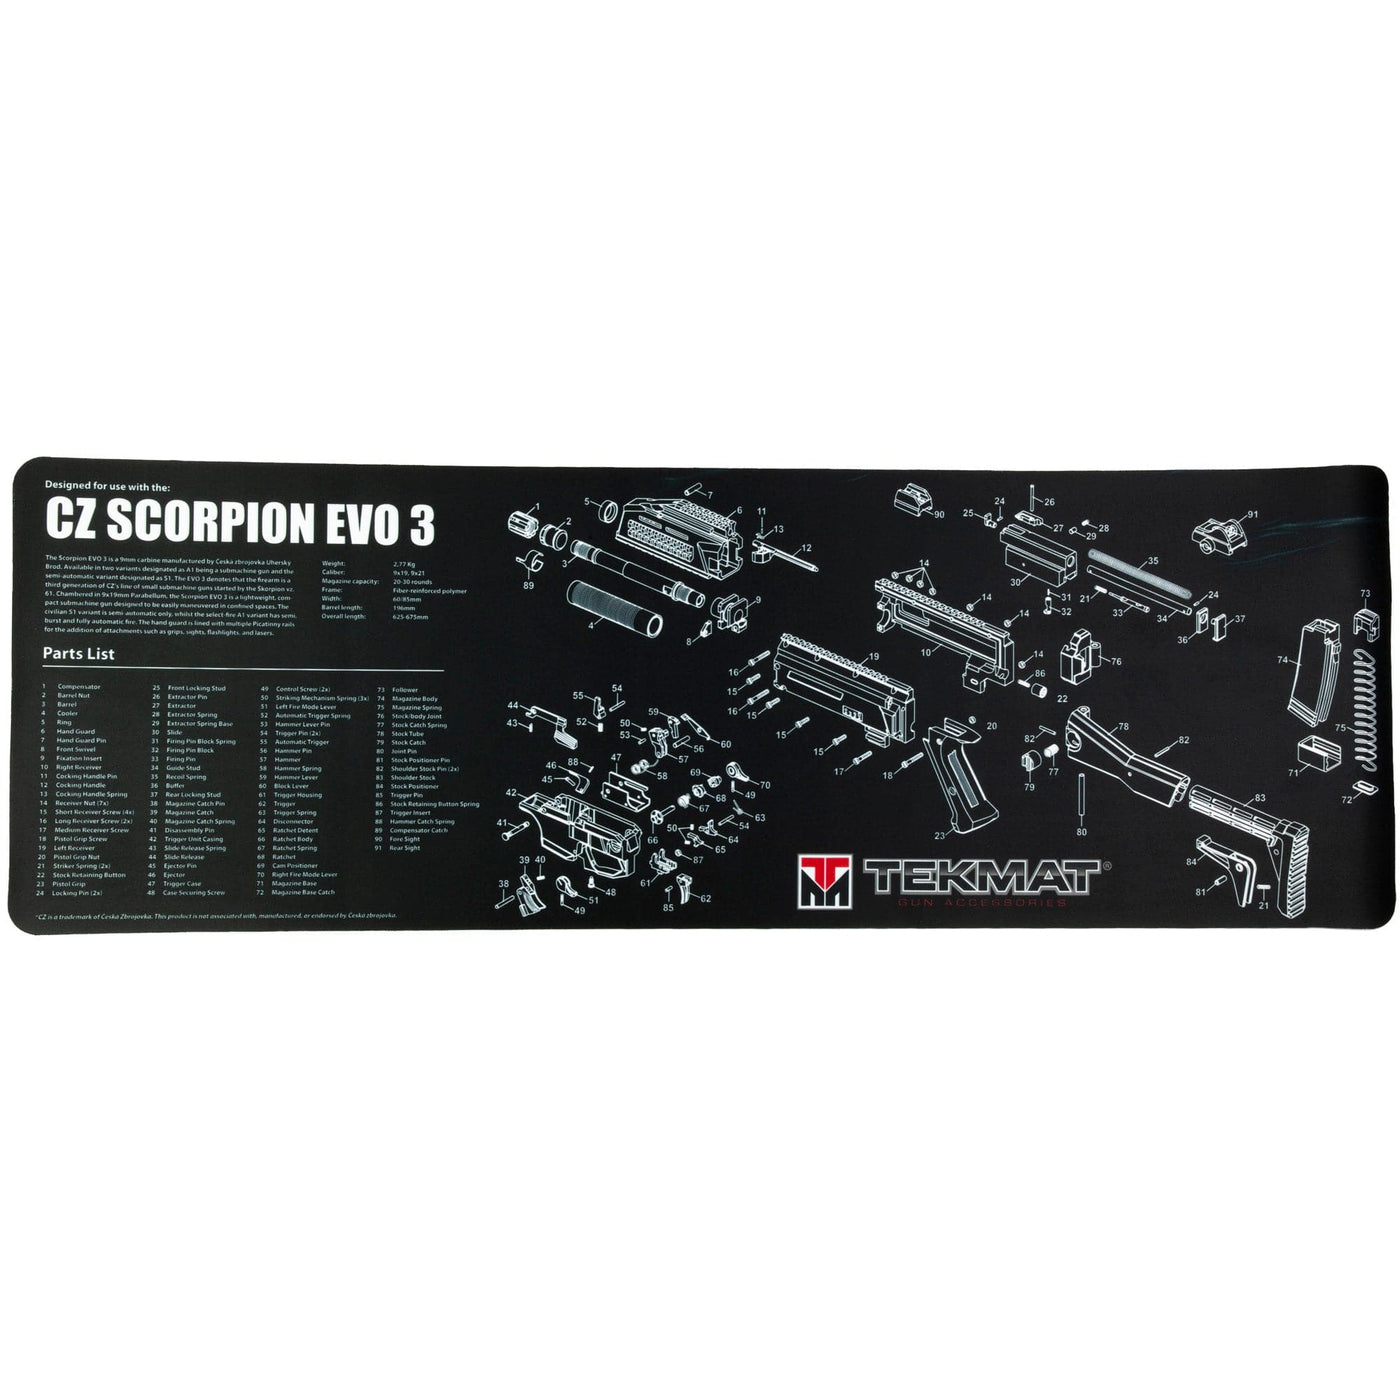 BECK TEK, LLC (TEKMAT) Tekmat Pstl Mat For Cz Scorpion Blk Gun Care